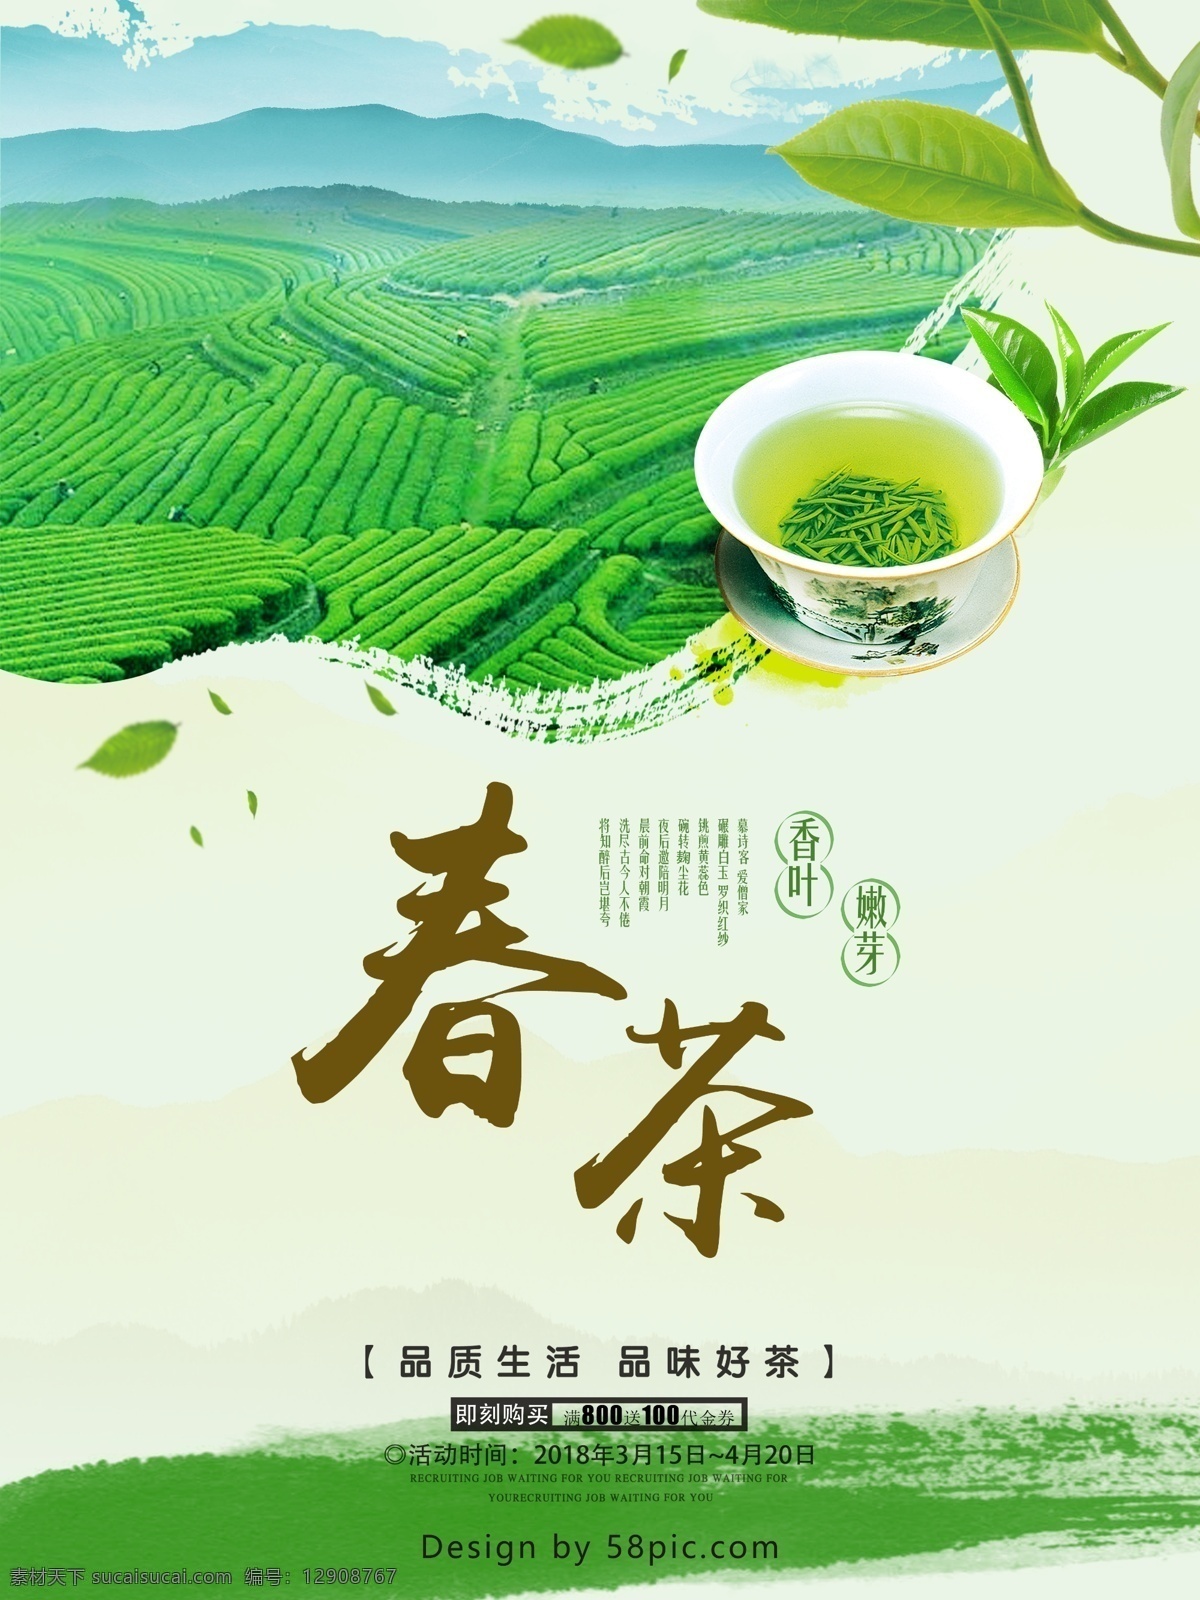 2018 年 春茶 上市 海报 茶叶 茶文化 茶杯 嫩芽 茶田 好茶 香叶